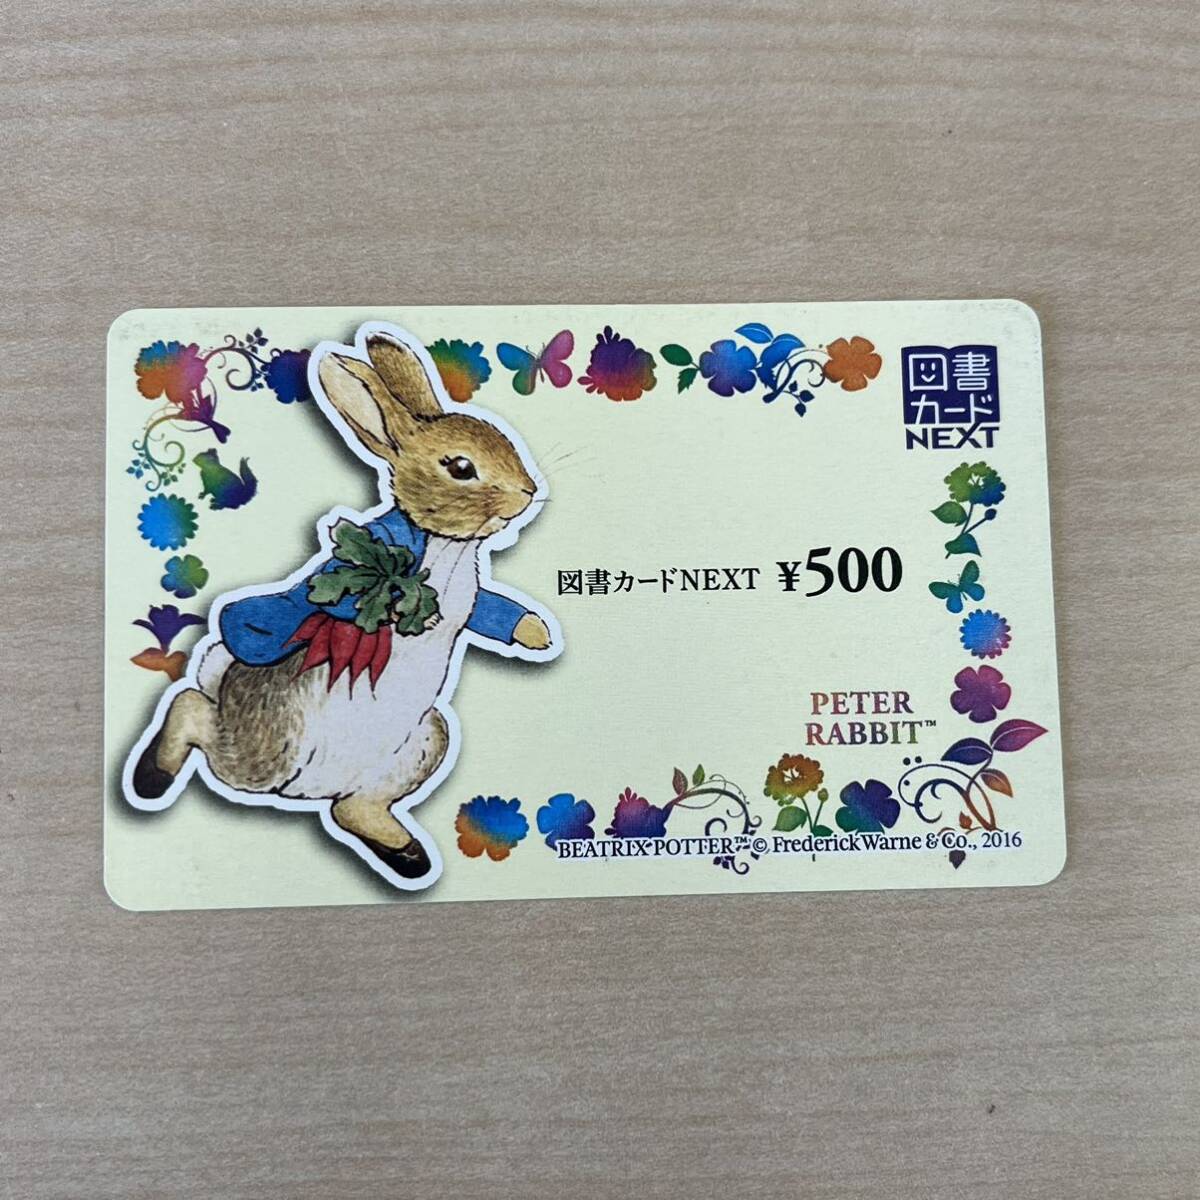 [TK0408] сертификат на книги NEXT next номинальная стоимость 500 иен минут 1 листов Peter Rabbit иметь временные ограничения действия 2030 год 12 месяц 31 до дня 